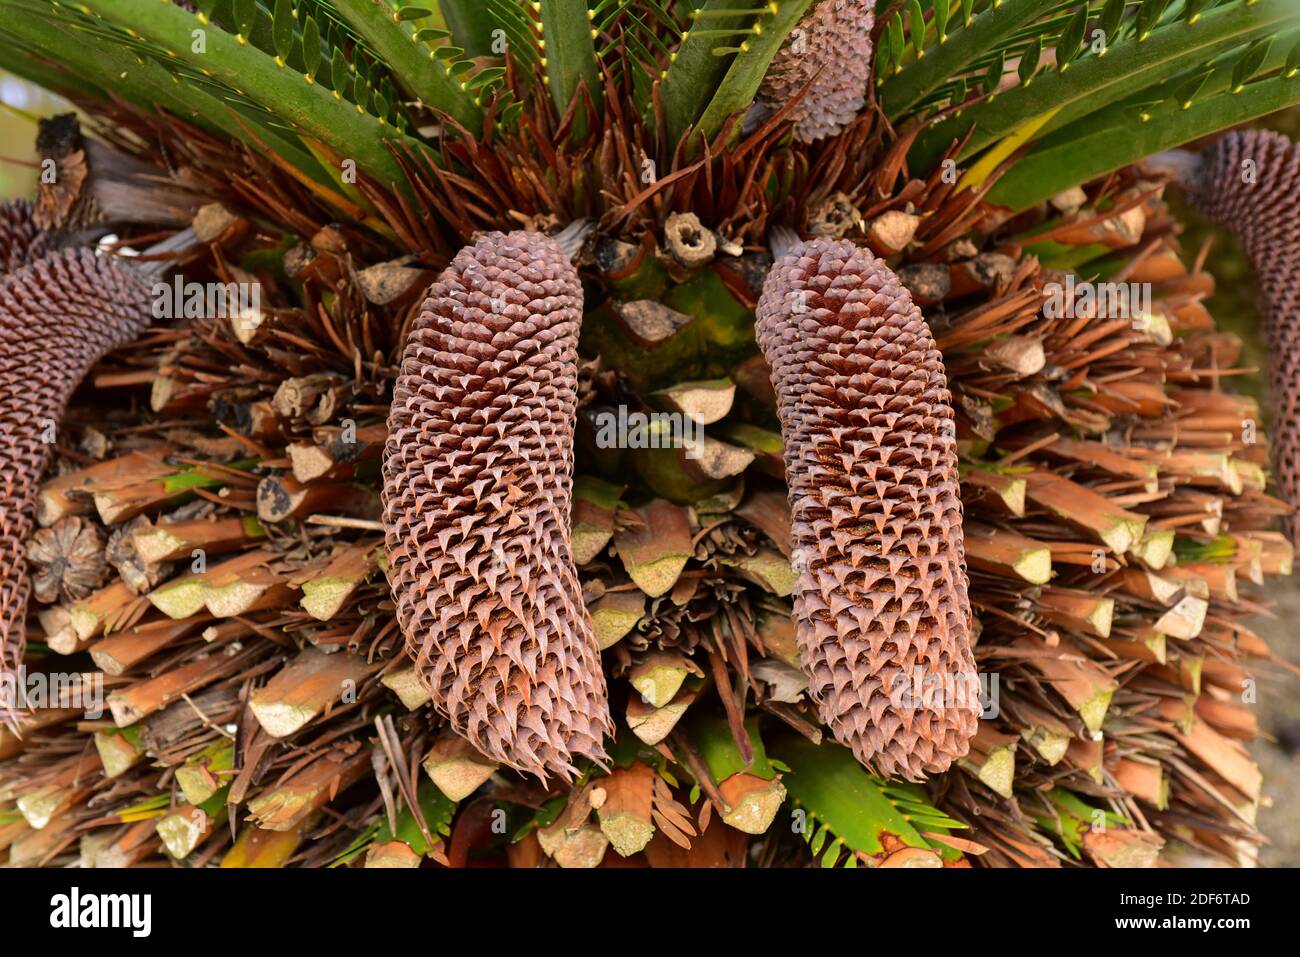 Zamia palm (Macrozamia moorei) is a gymnosperm native to Australia. Male cones detail. Stock Photo